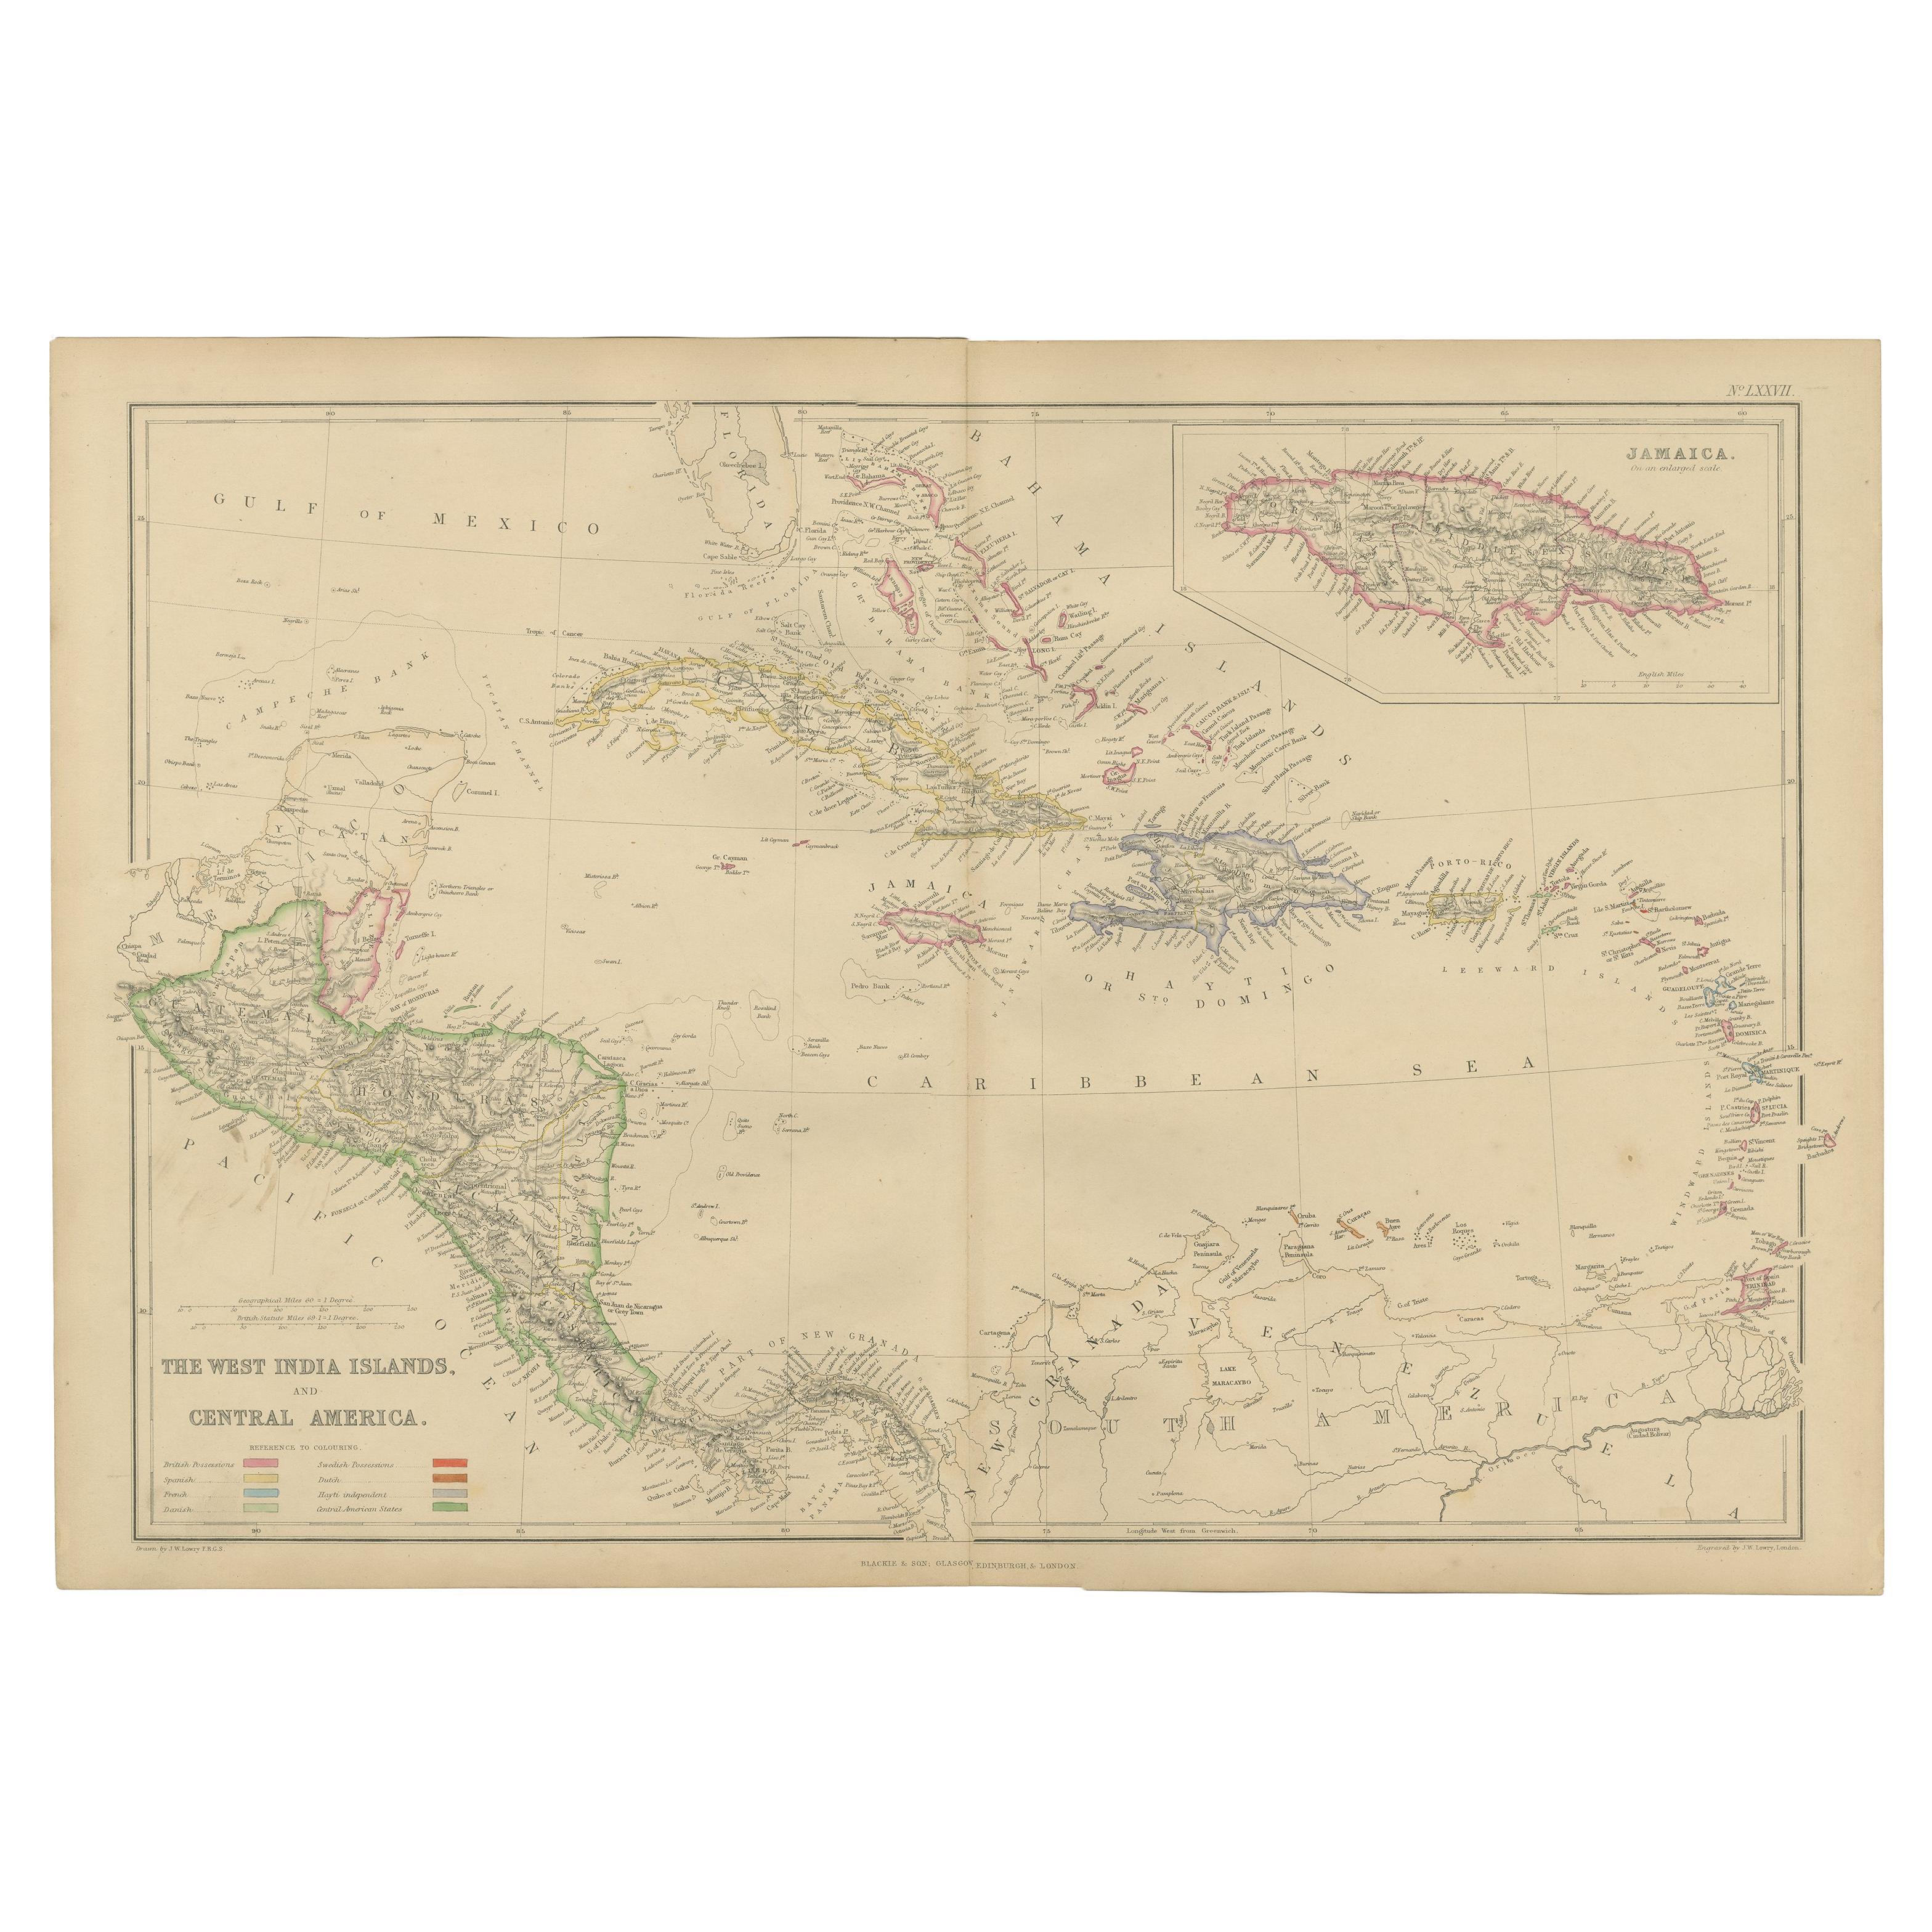 Antike Karte der Westindischen Inseln und Zentralamerikas von W. G. Blackie, 1859